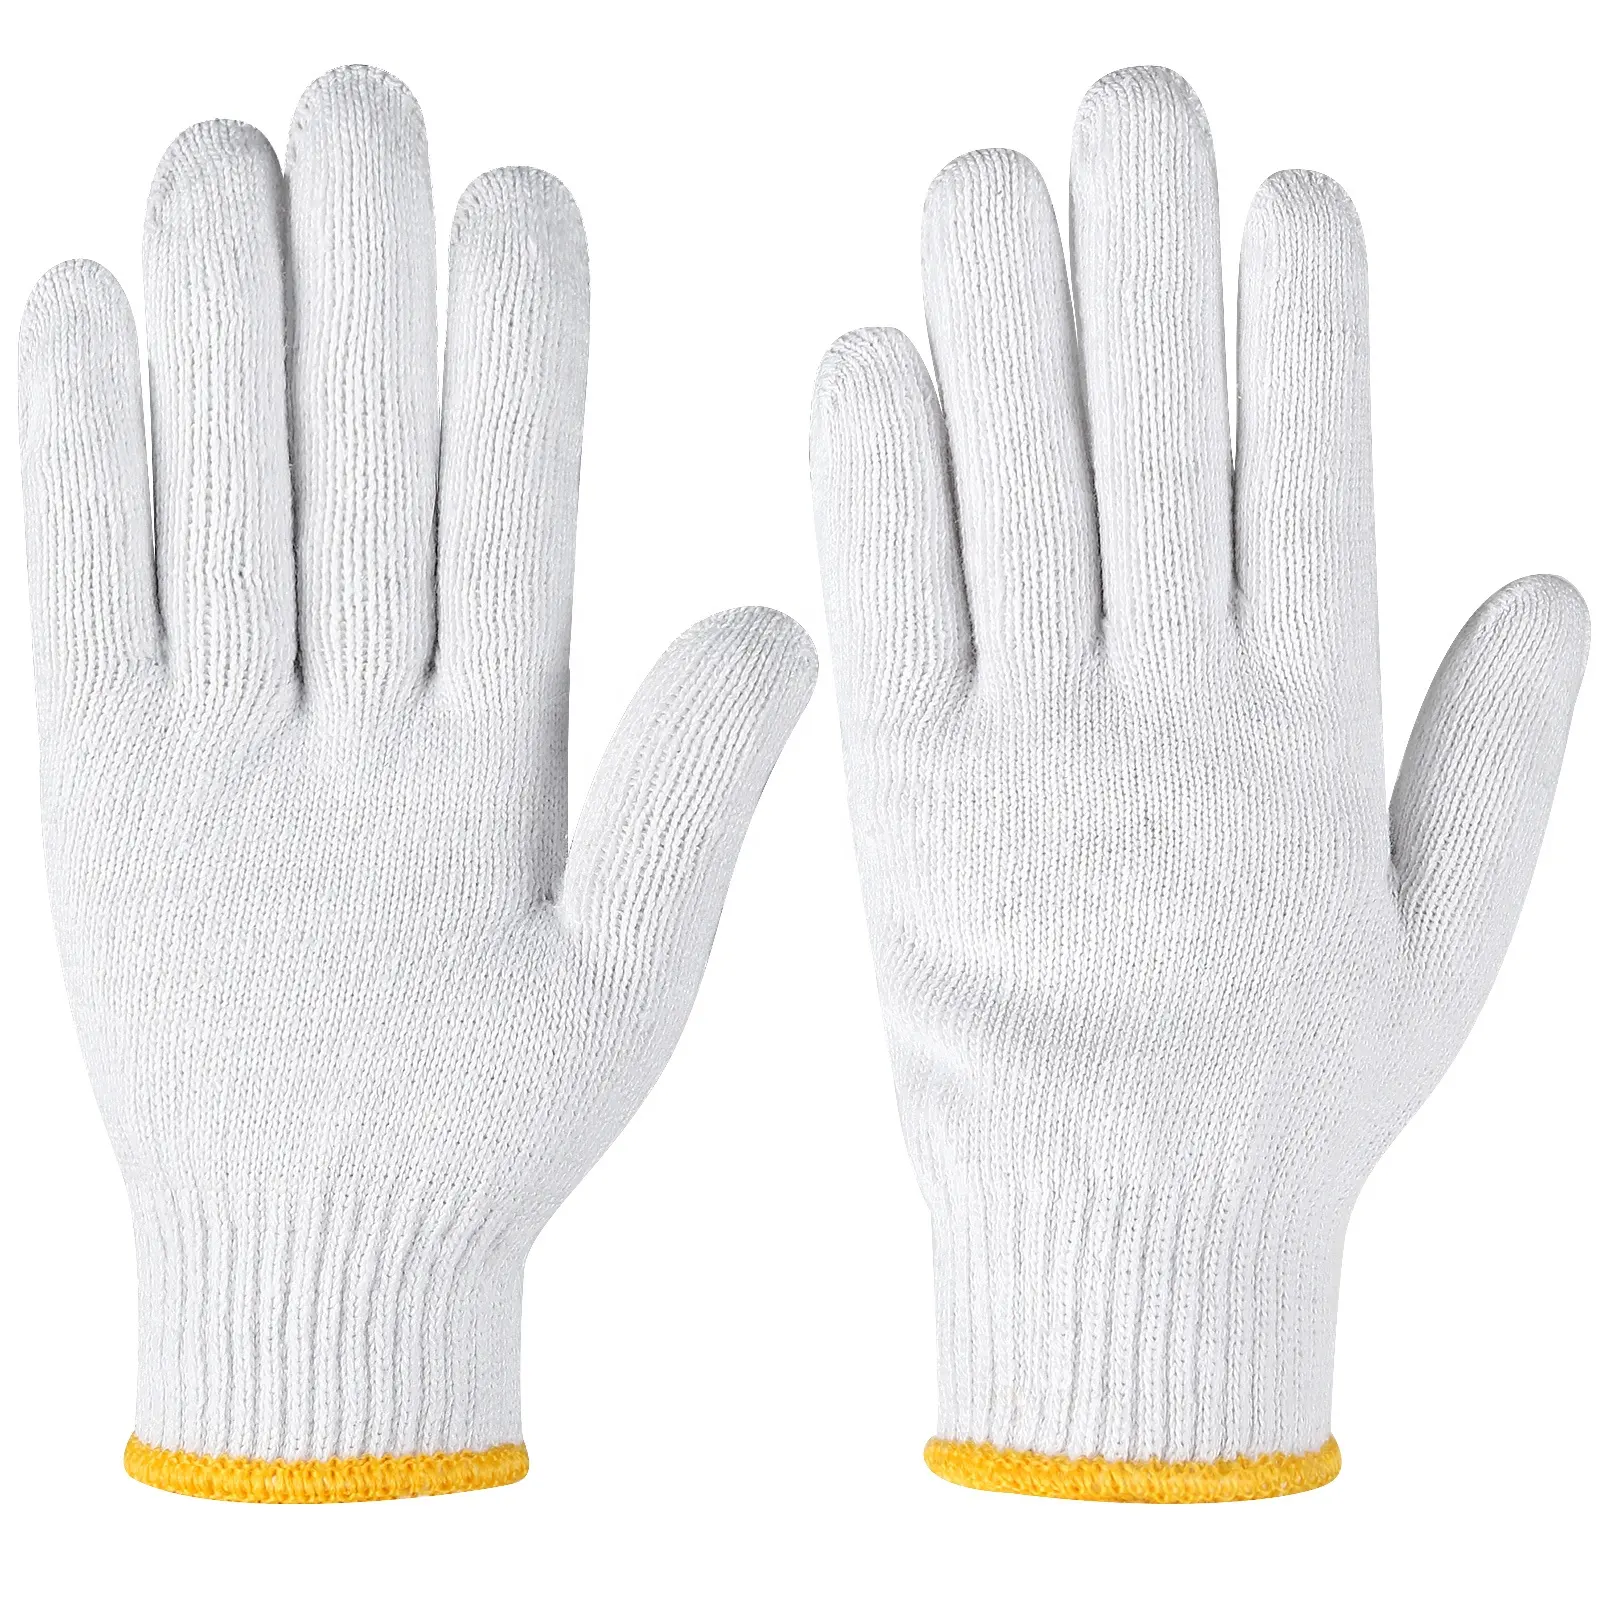 ถุงมือถักสีขาวฟอกธรรมชาติขนาด7/10ถุงมือผ้าฝ้ายเพื่อความปลอดภัยในการทำงาน